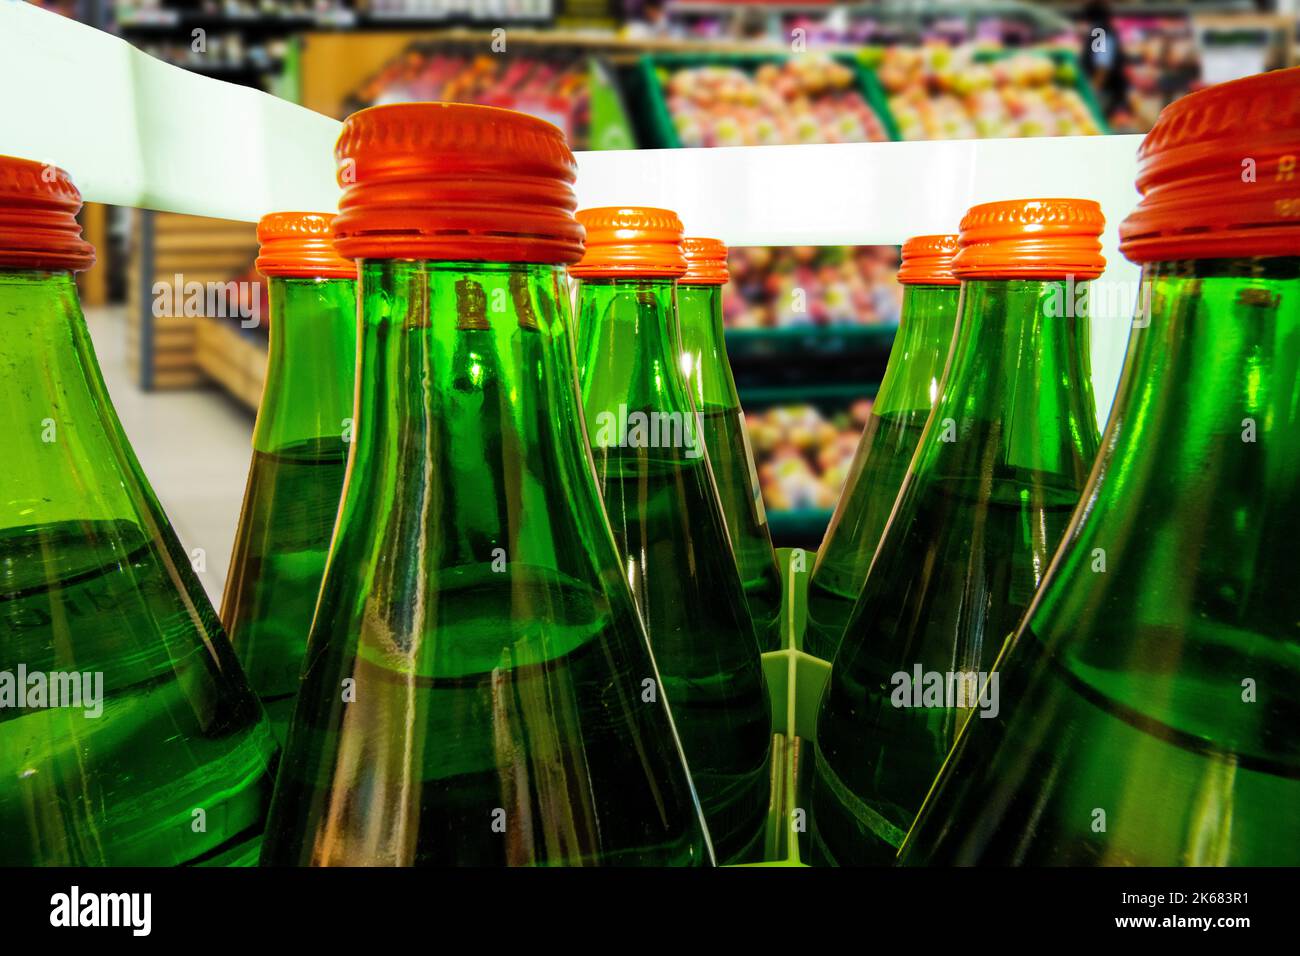 Nahaufnahme von einer Kiste Mineralwasser mit grünen Mehrweg-Glasflaschen Stock Photo